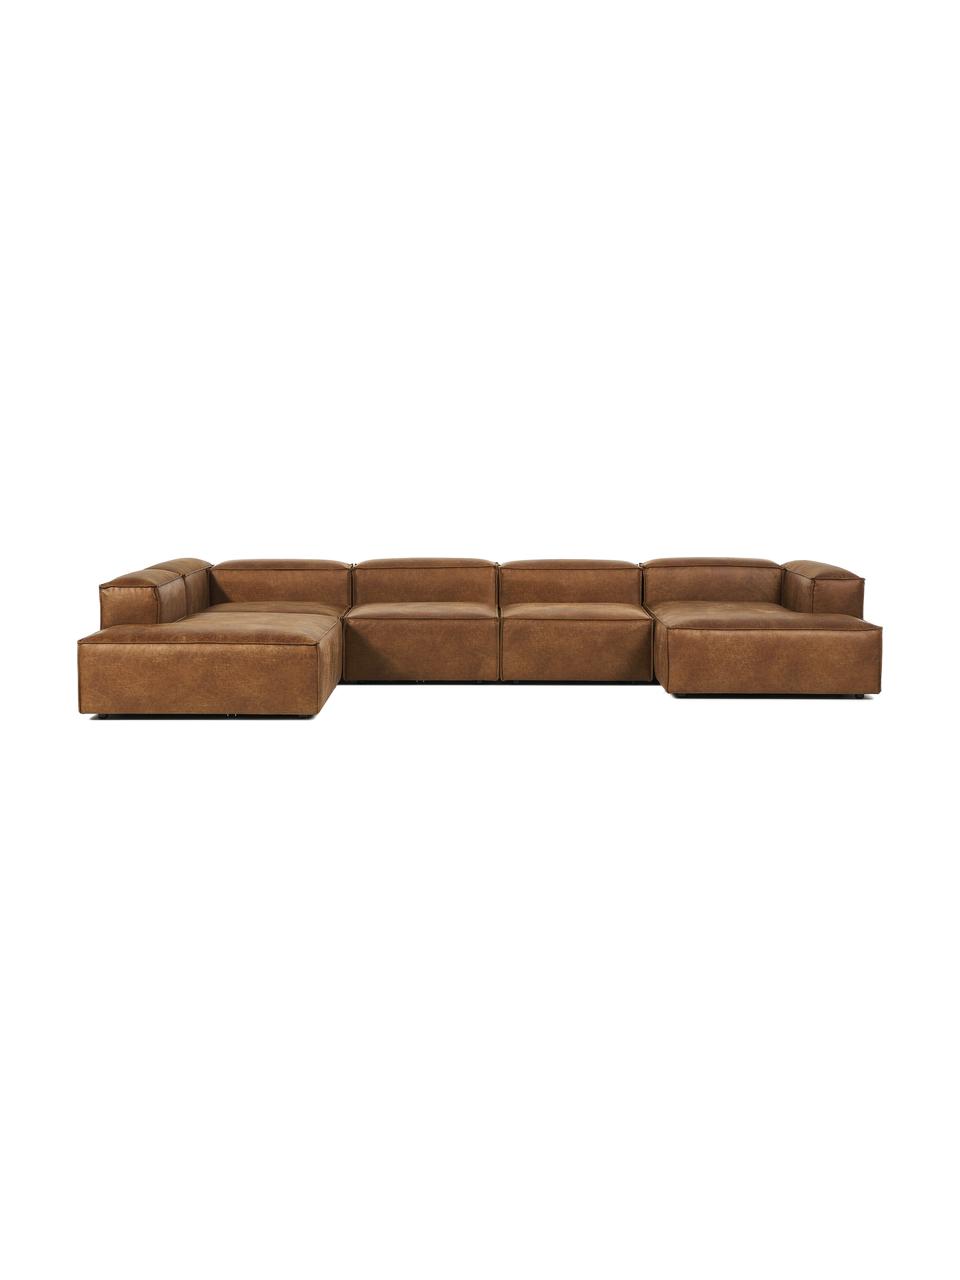 Sofa modułowa ze skóry z recyklingu Lennon, Tapicerka: skóra z recyklingu (70% s, Stelaż: lite drewno, sklejka, Nogi: tworzywo sztuczne, Brązowa skóra, S 418 x W 68 cm, lewostronna